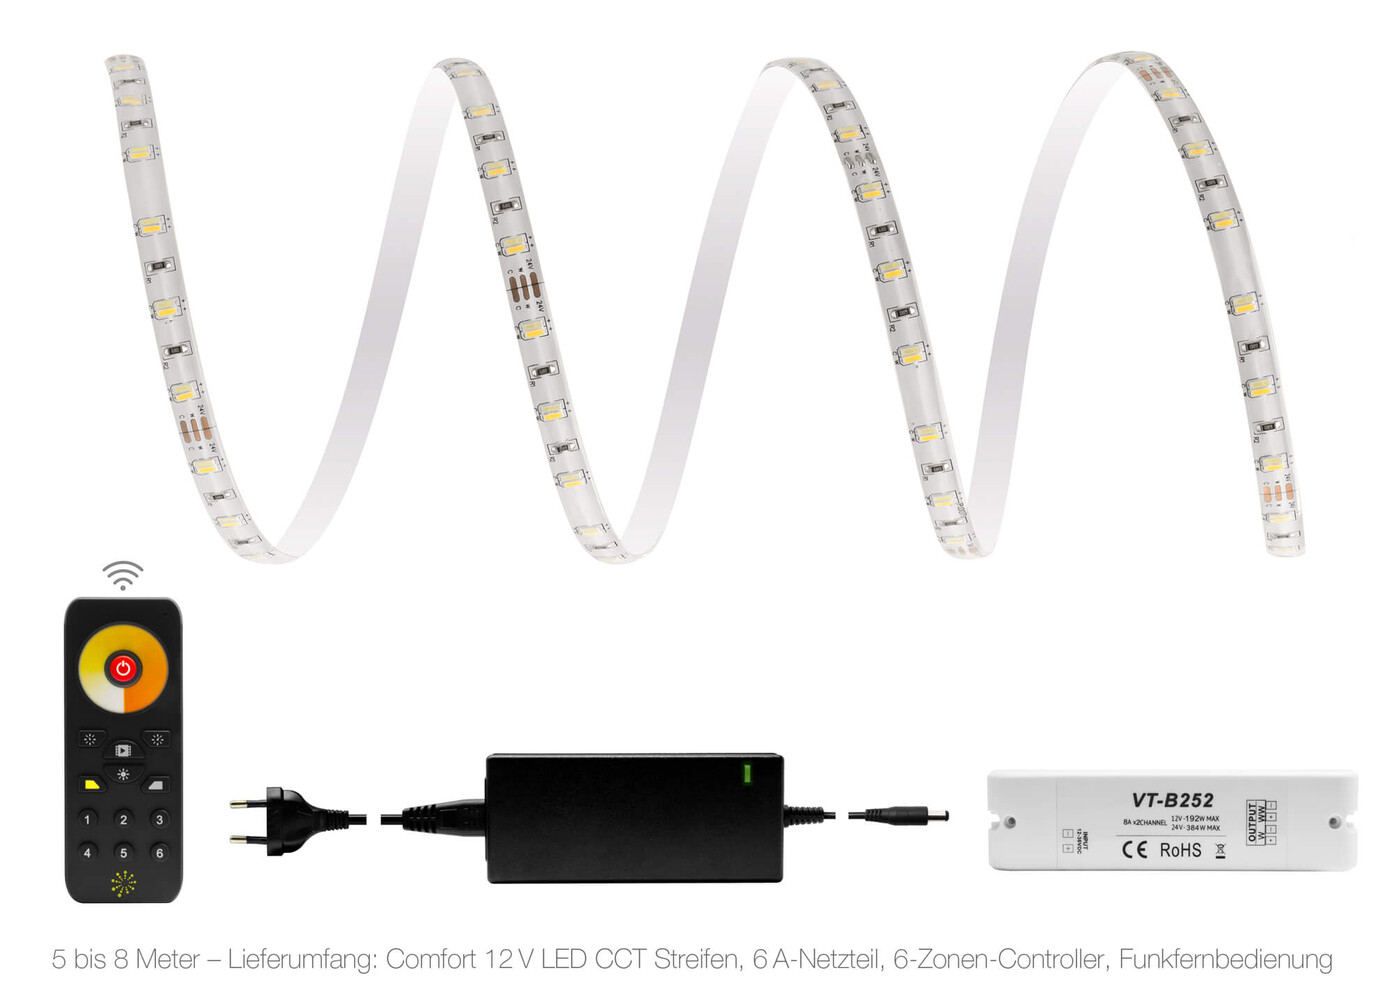 hochwertiger LED Streifen von LED Universum mit optimaler Leuchtkraft und Flexibilität